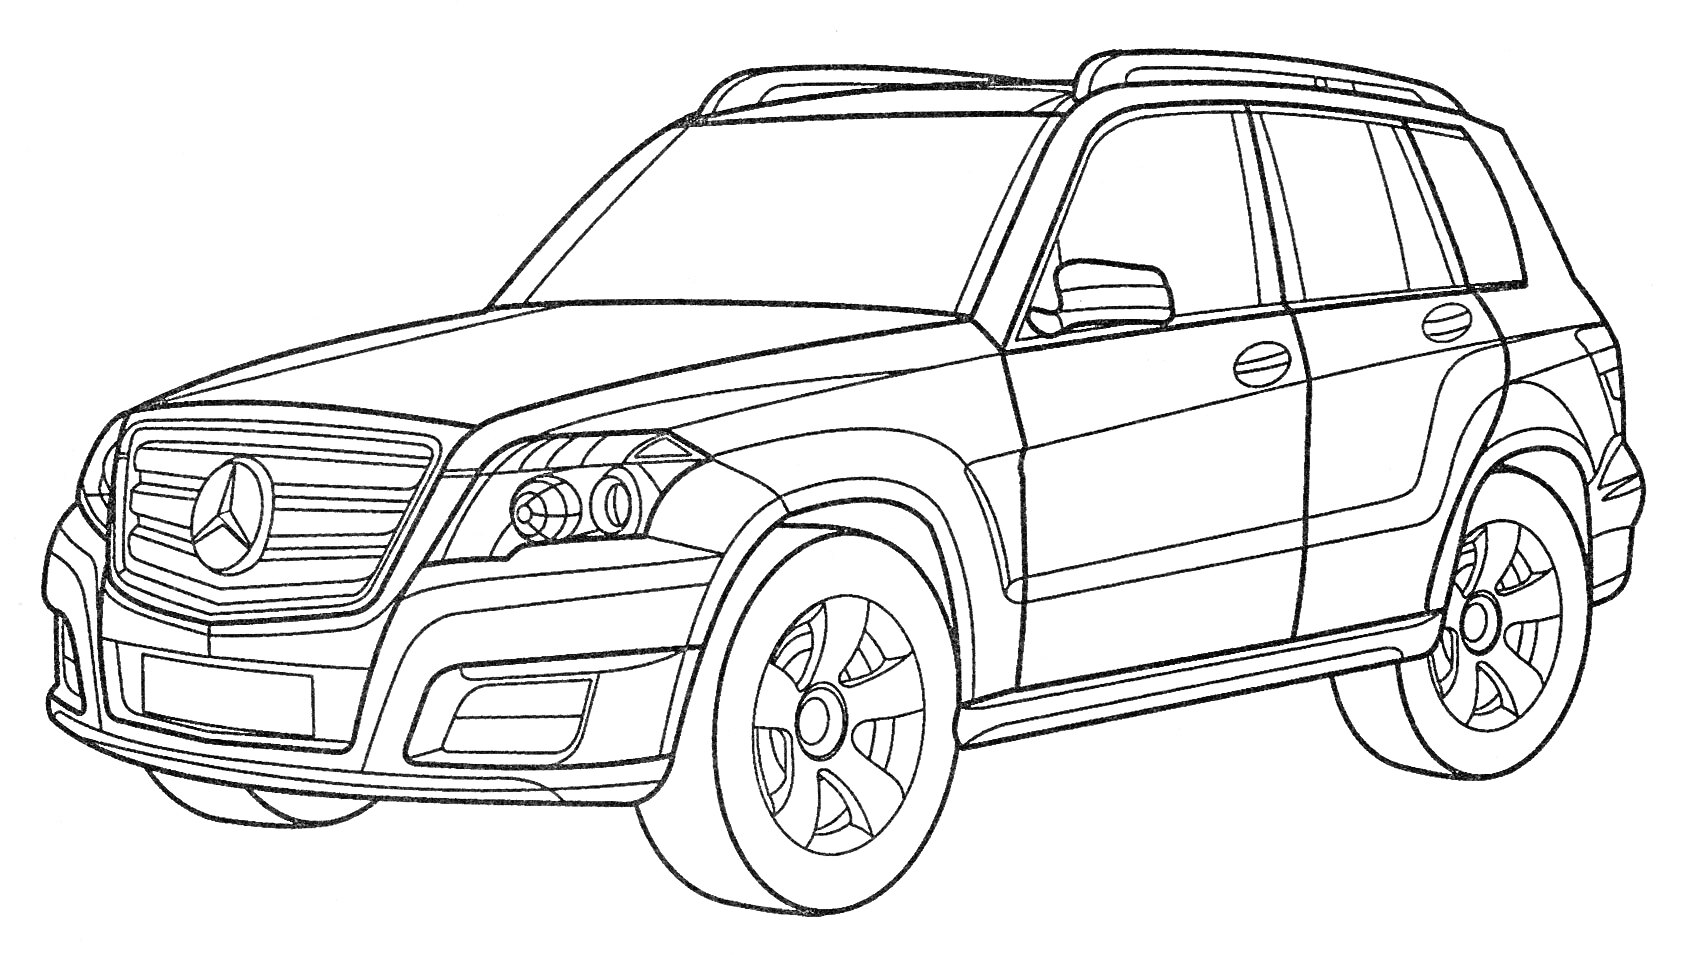 Раскраска Линия рисунка автомобиля Мерседес GLK с четырьмя дверями и дисками